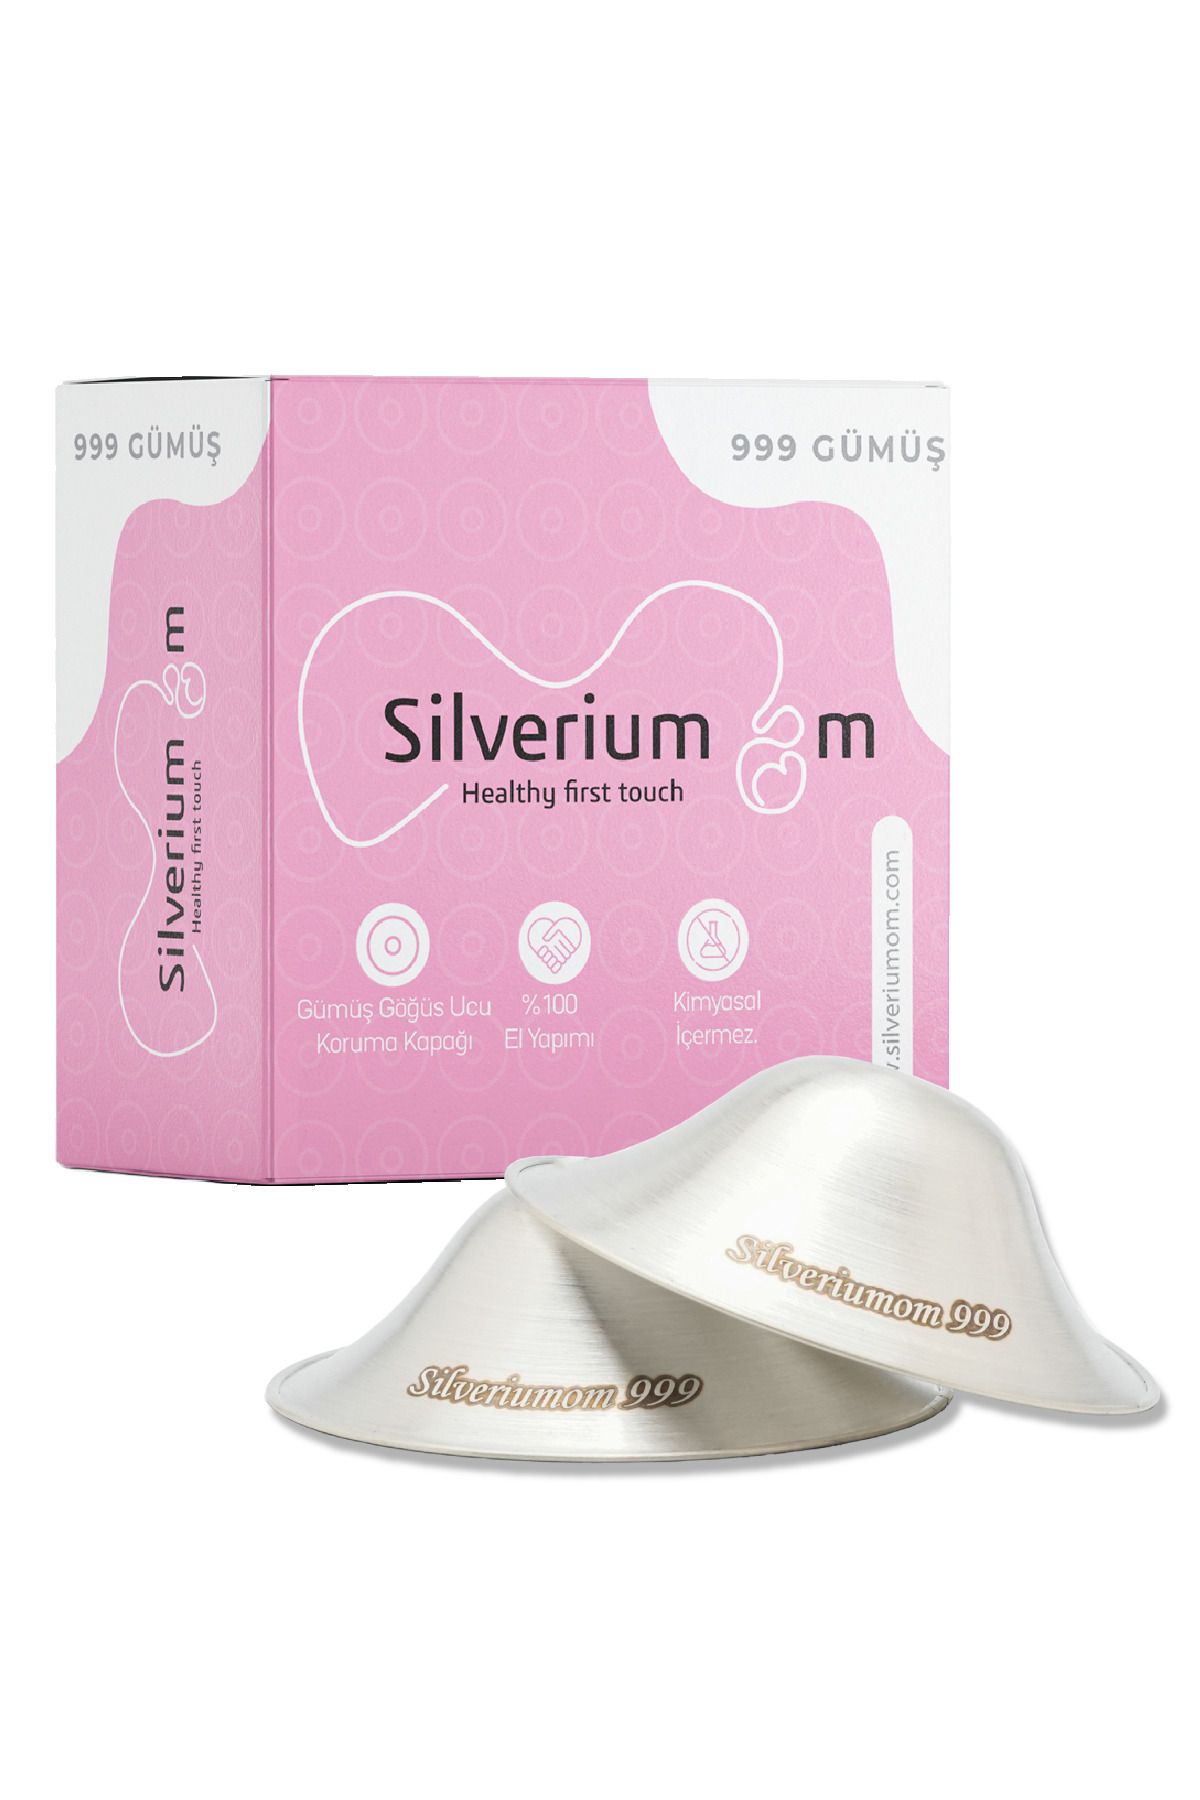 Silveriumom Healthy first touch Gümüş Göğüs Ucu Kapakları